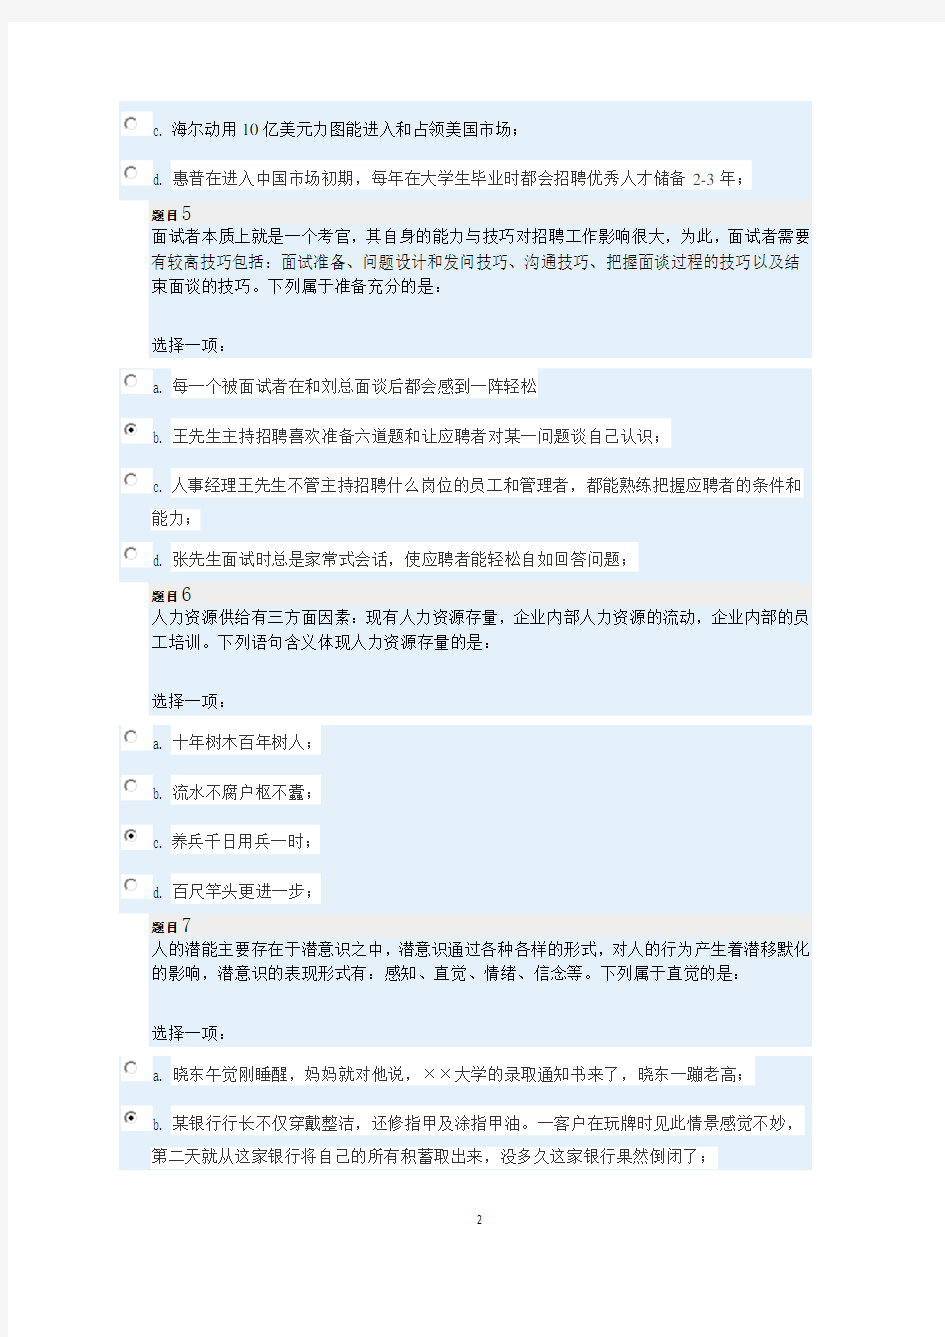 上海交大网络学院 人力资源作业一和作业二 - 打印